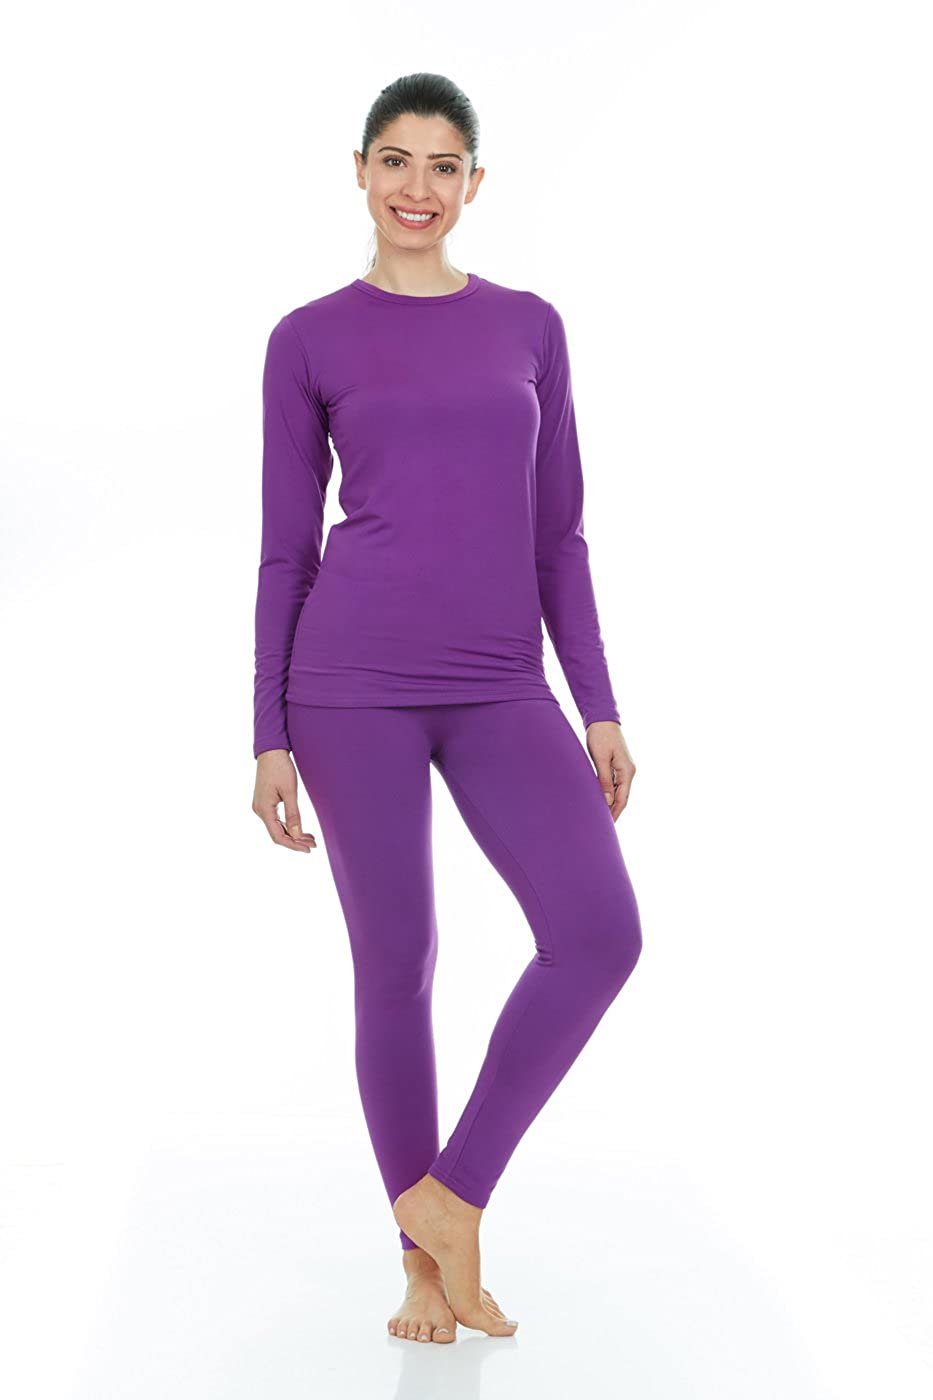 Thermajane Thermal Underwear for Girls Long John Set Kids (Purple, Large) 